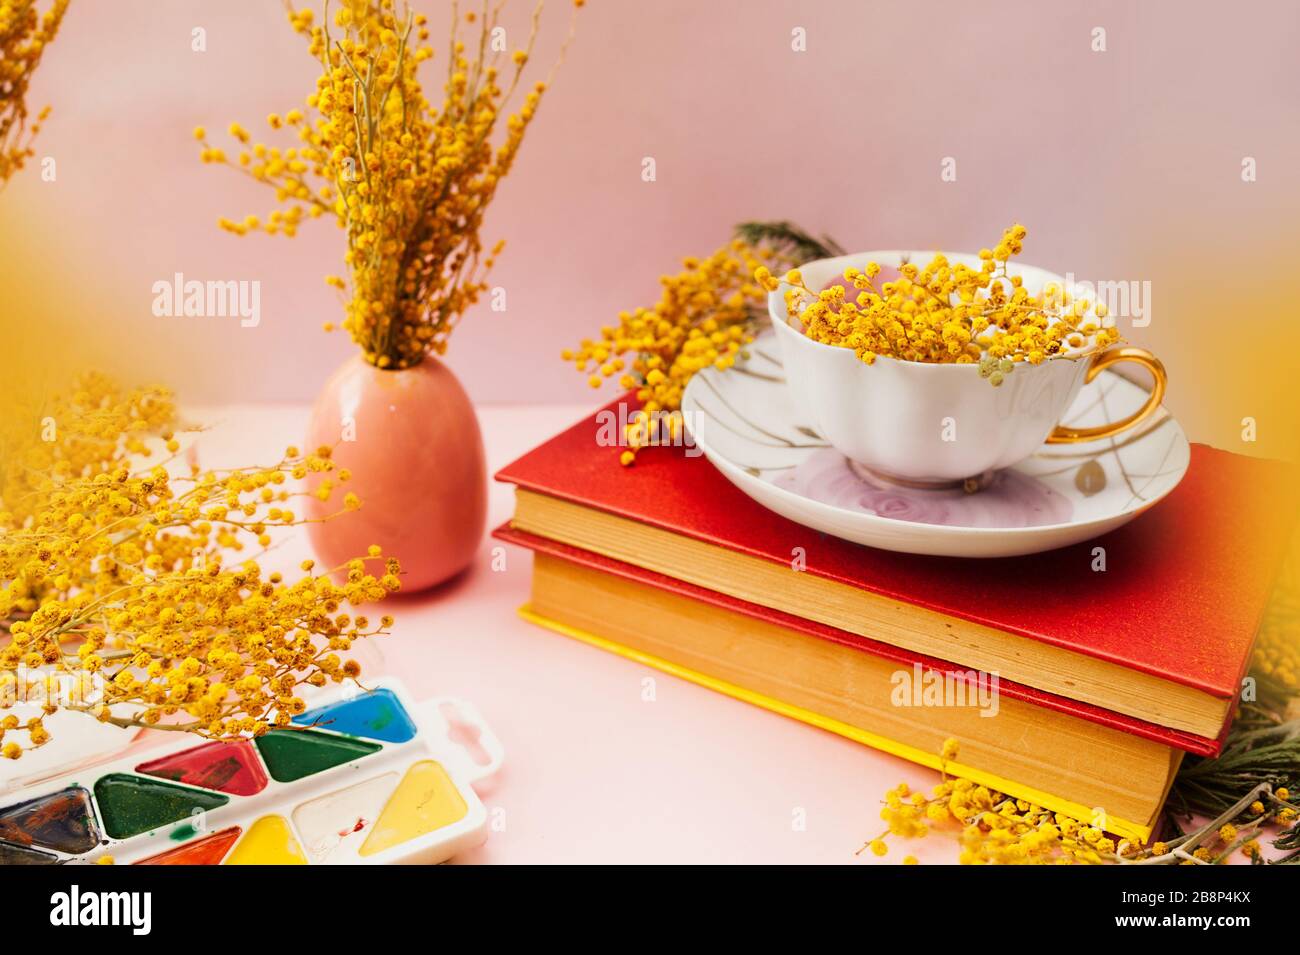 Wunderschönes Frühlings-Stillleben, ein Blumenstrauß von Mimosa in einem weißen Porzellanbecher auf weichem rosa Hintergrund mit zwei Jahrbüchern in einem harten roten Cover mit VI Stockfoto